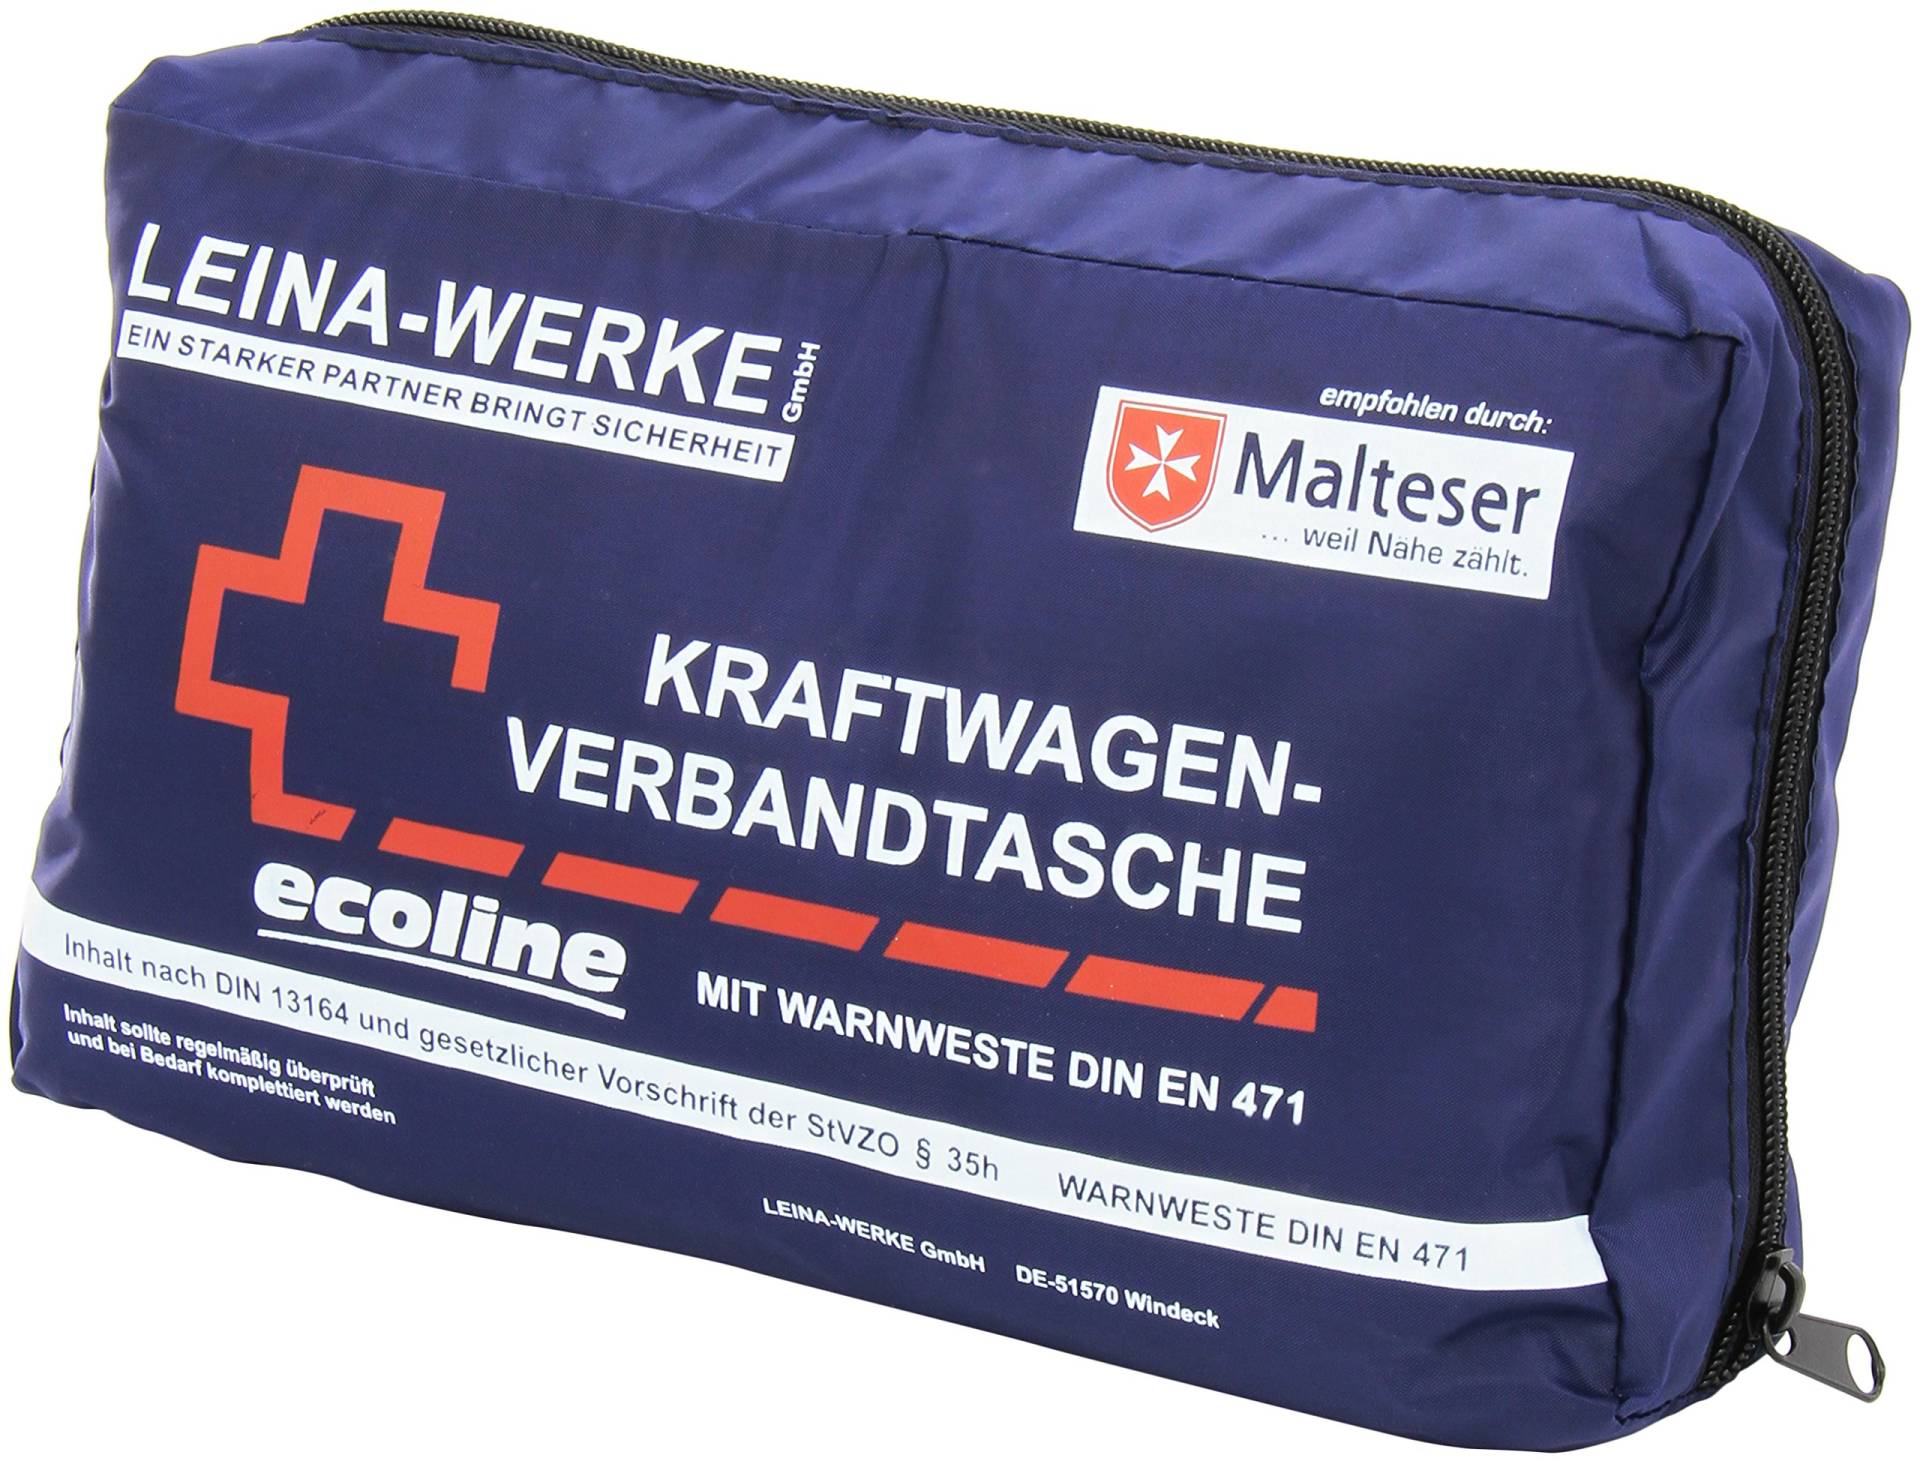 Leina-Werke 11057 KFZ-Verbandtasche Compact mit Warnweste Ecoline ohne Klett, Blau/Weiß/Rot von Leina-Werke